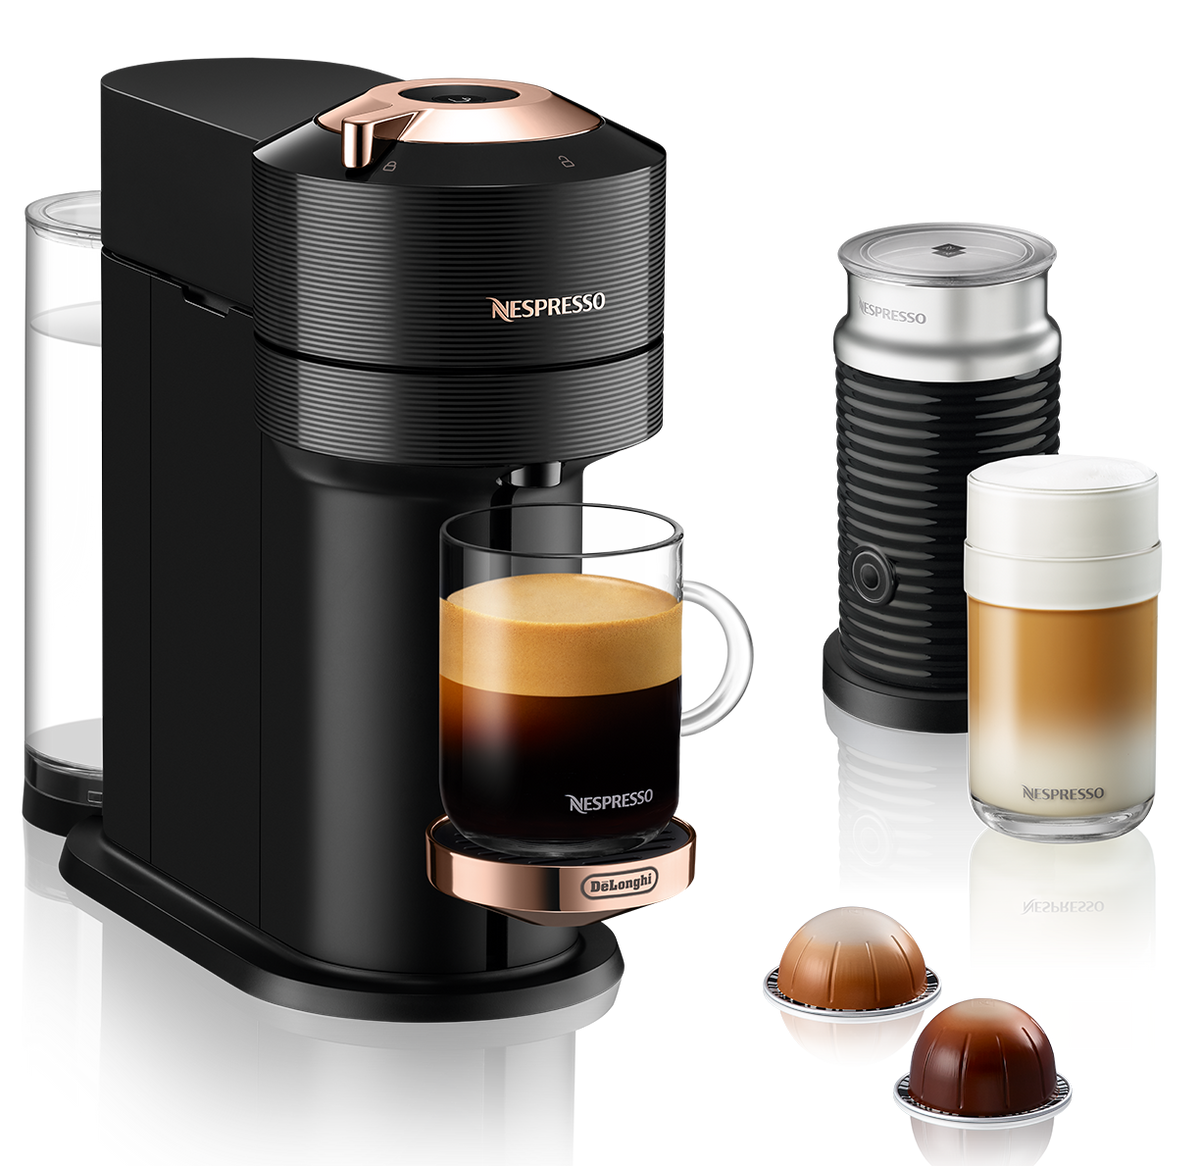 Nespresso Vertuo Next Premium Espresso Machine by DeLonghi - Black Ros –  Whole Latte Love